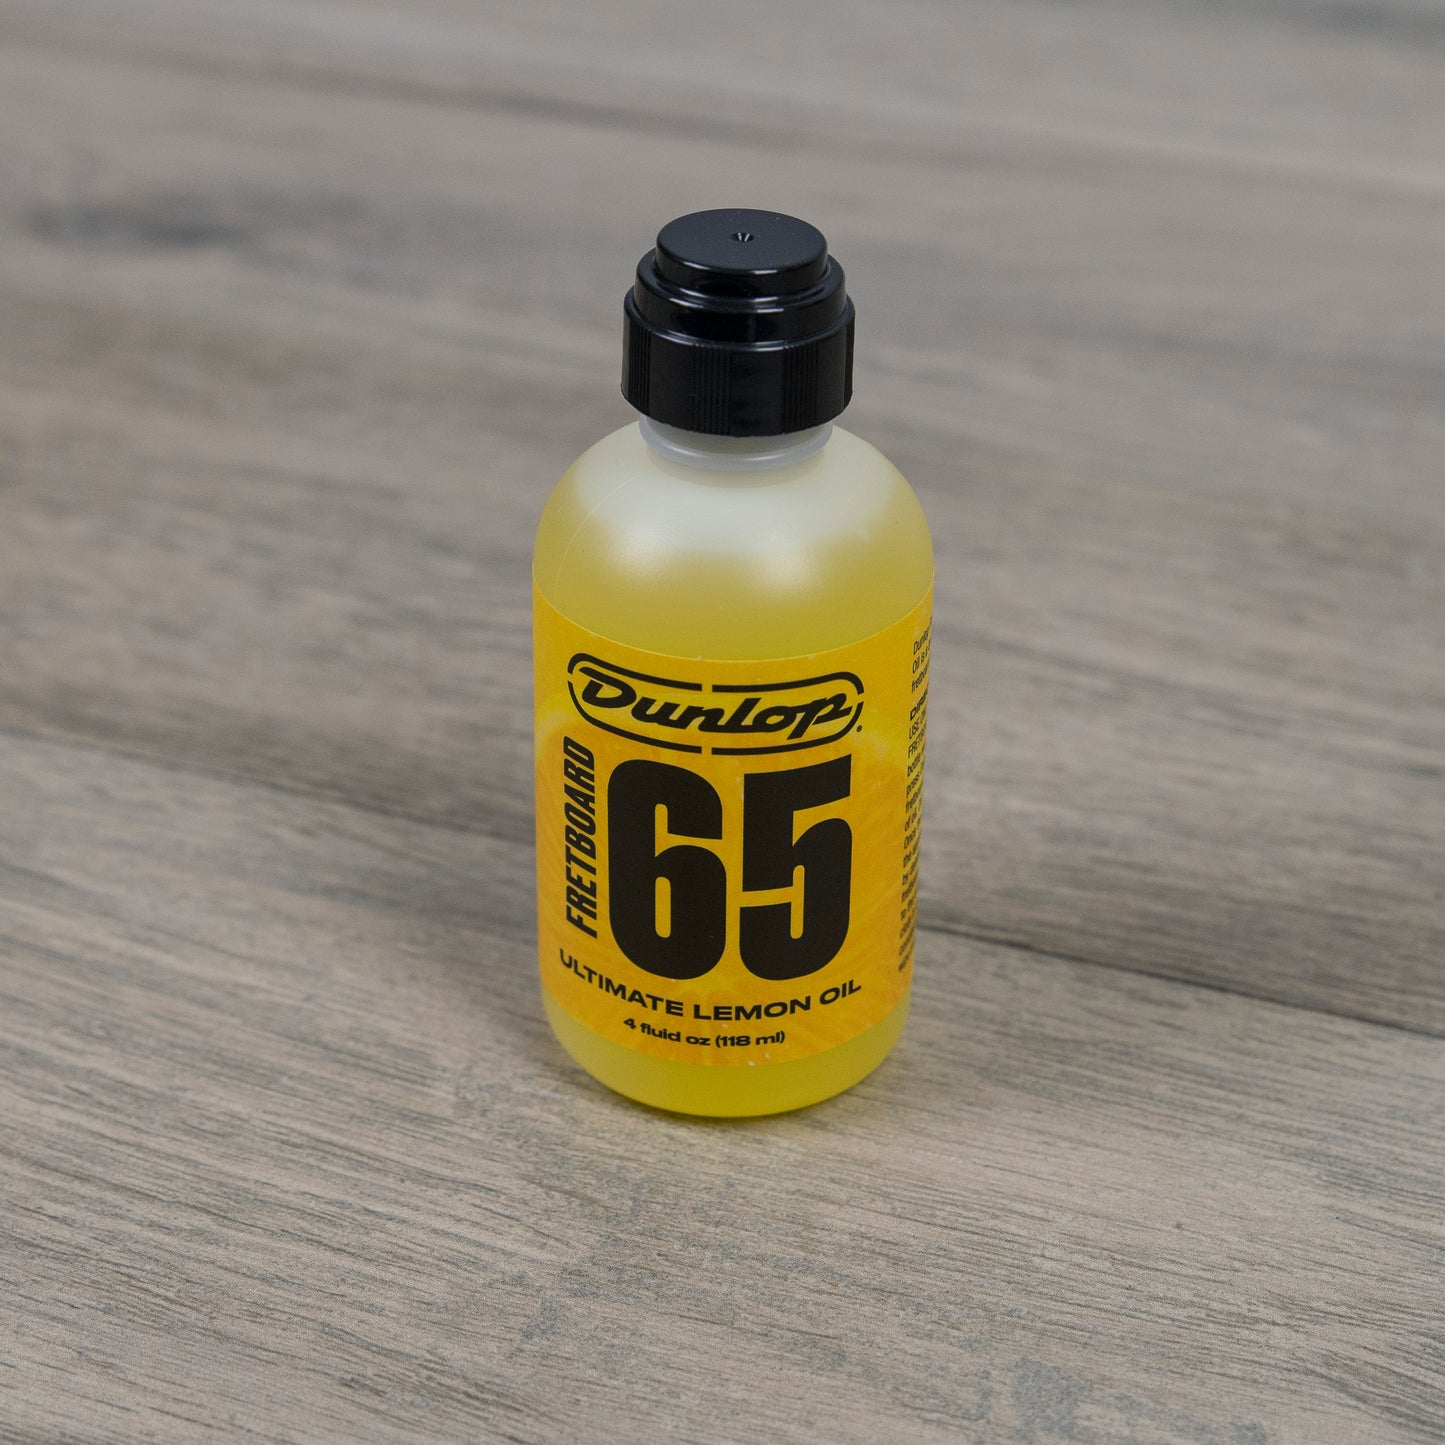 Dunlop Fretboard 65 Ultimate Lemon Oil, 4oz